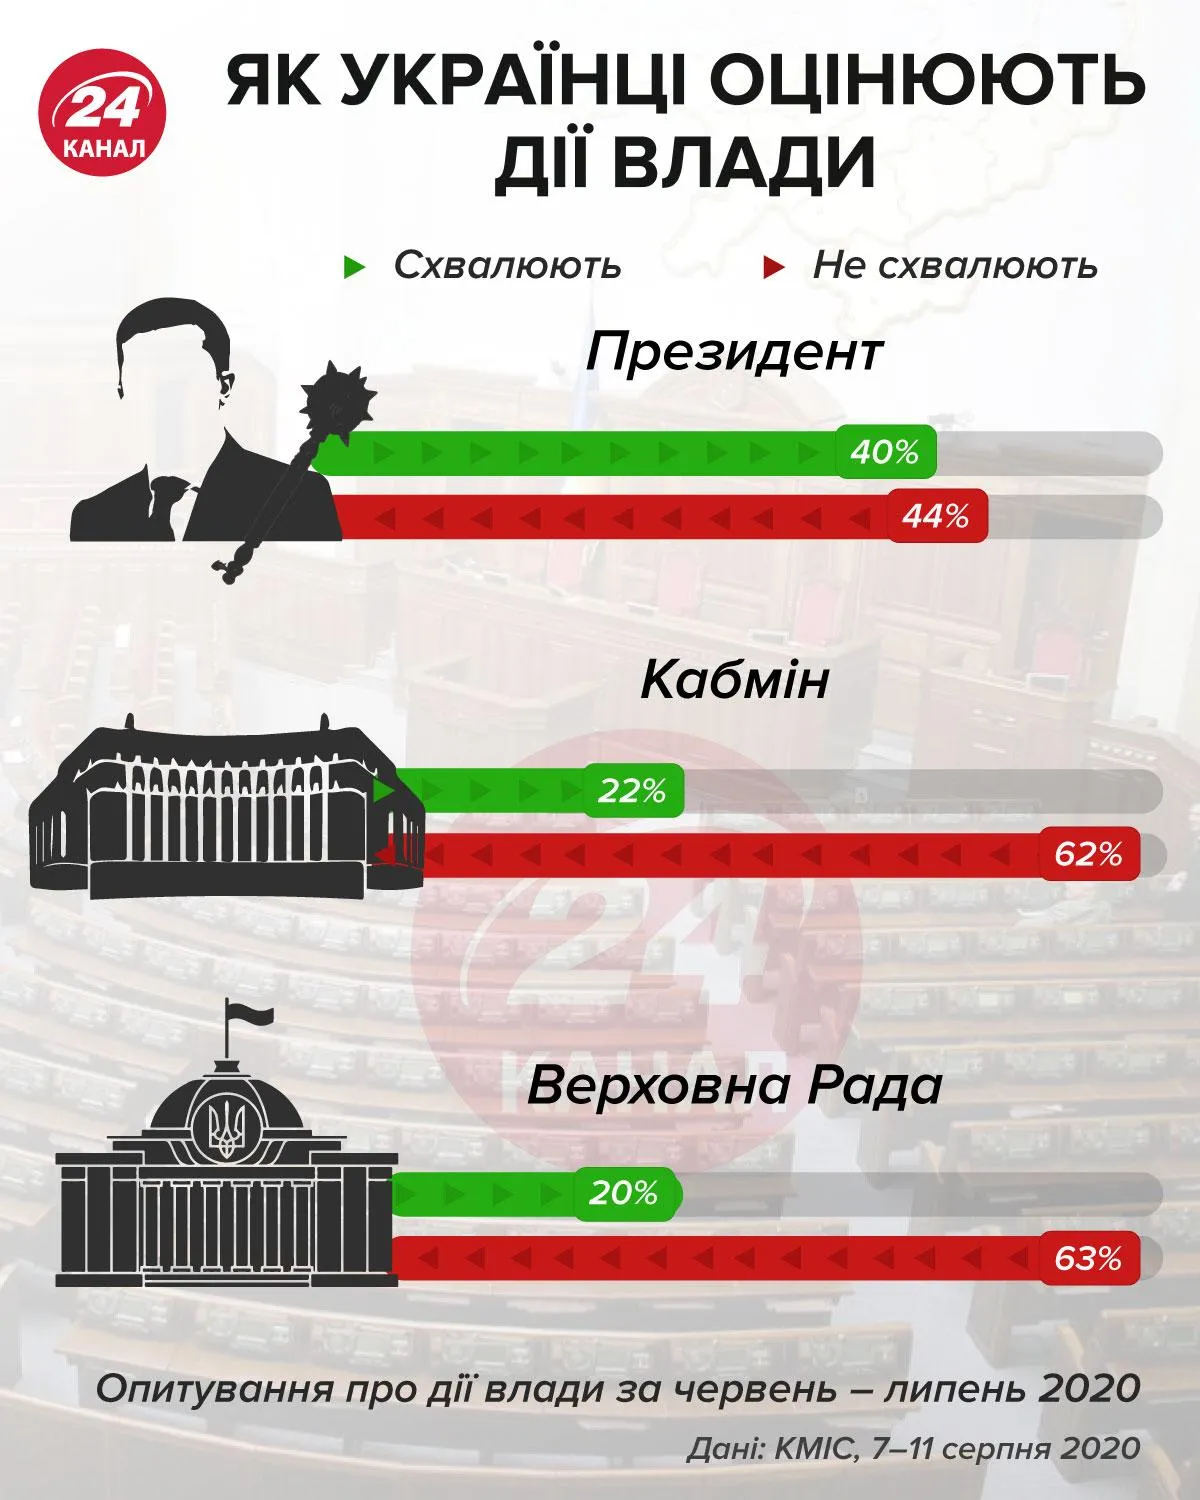 Как украинцы оценивают действия правительства инфографика 24 канал